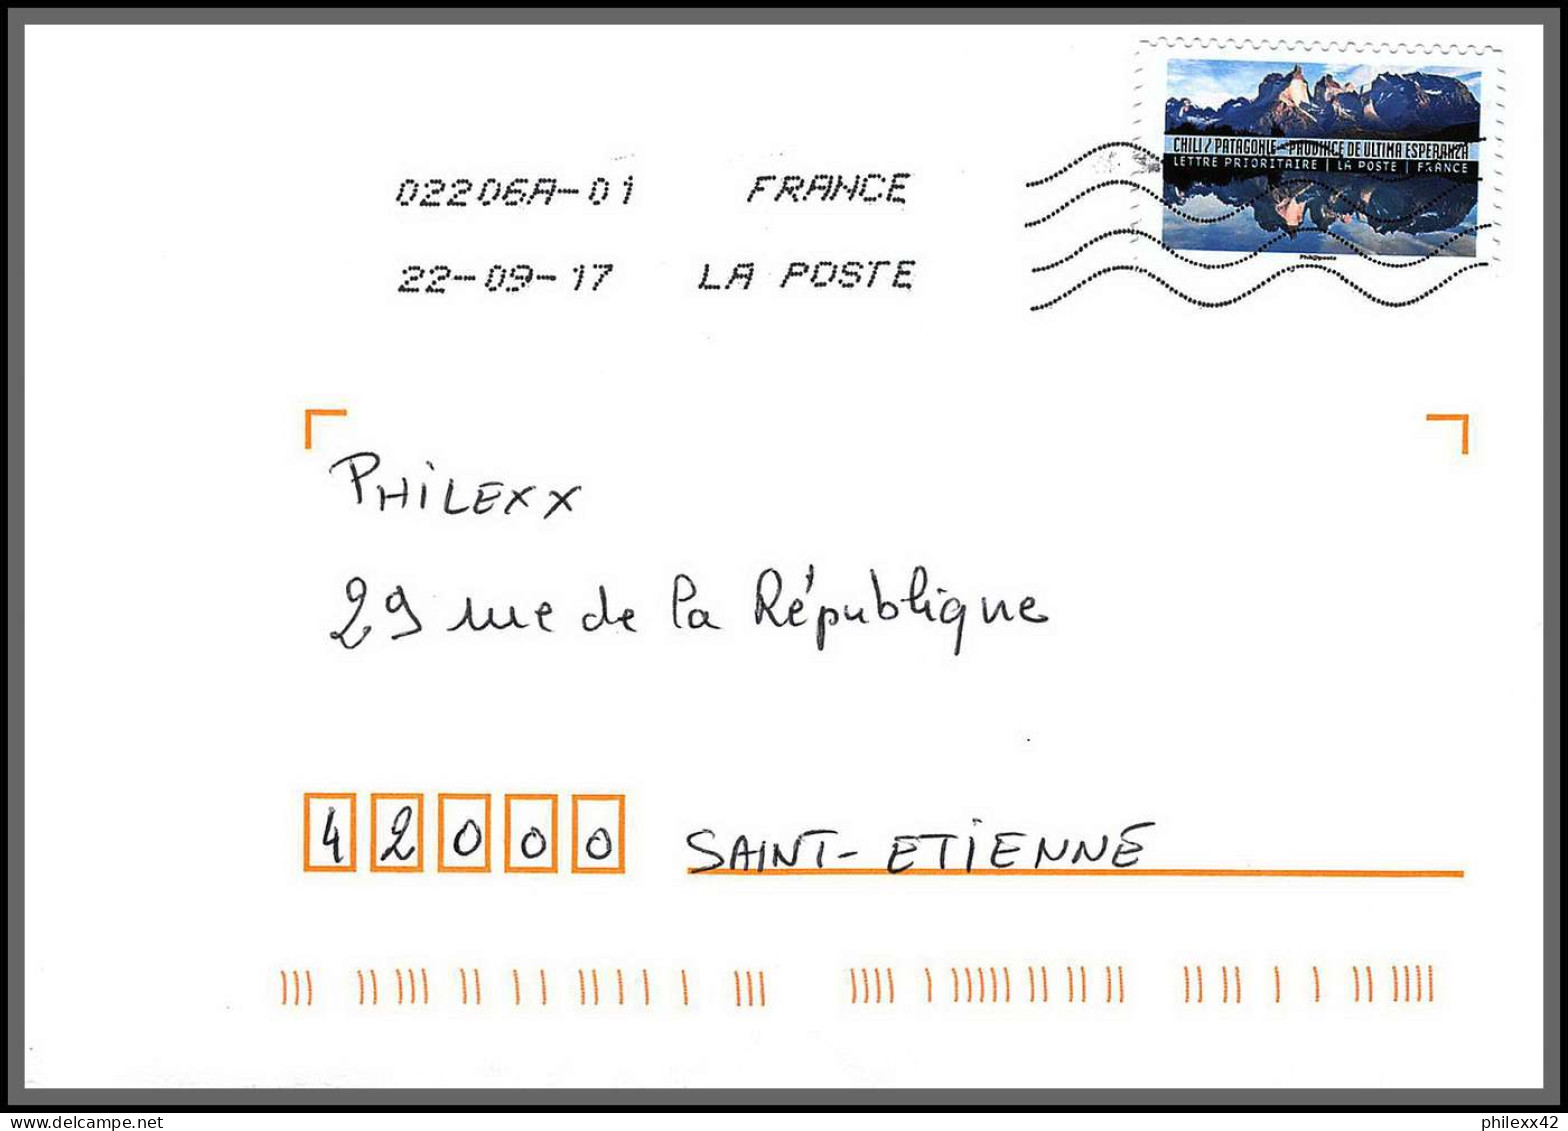 95923 - lot de 15 courriers lettres enveloppes de l'année 2017 divers affranchissements en EUROS